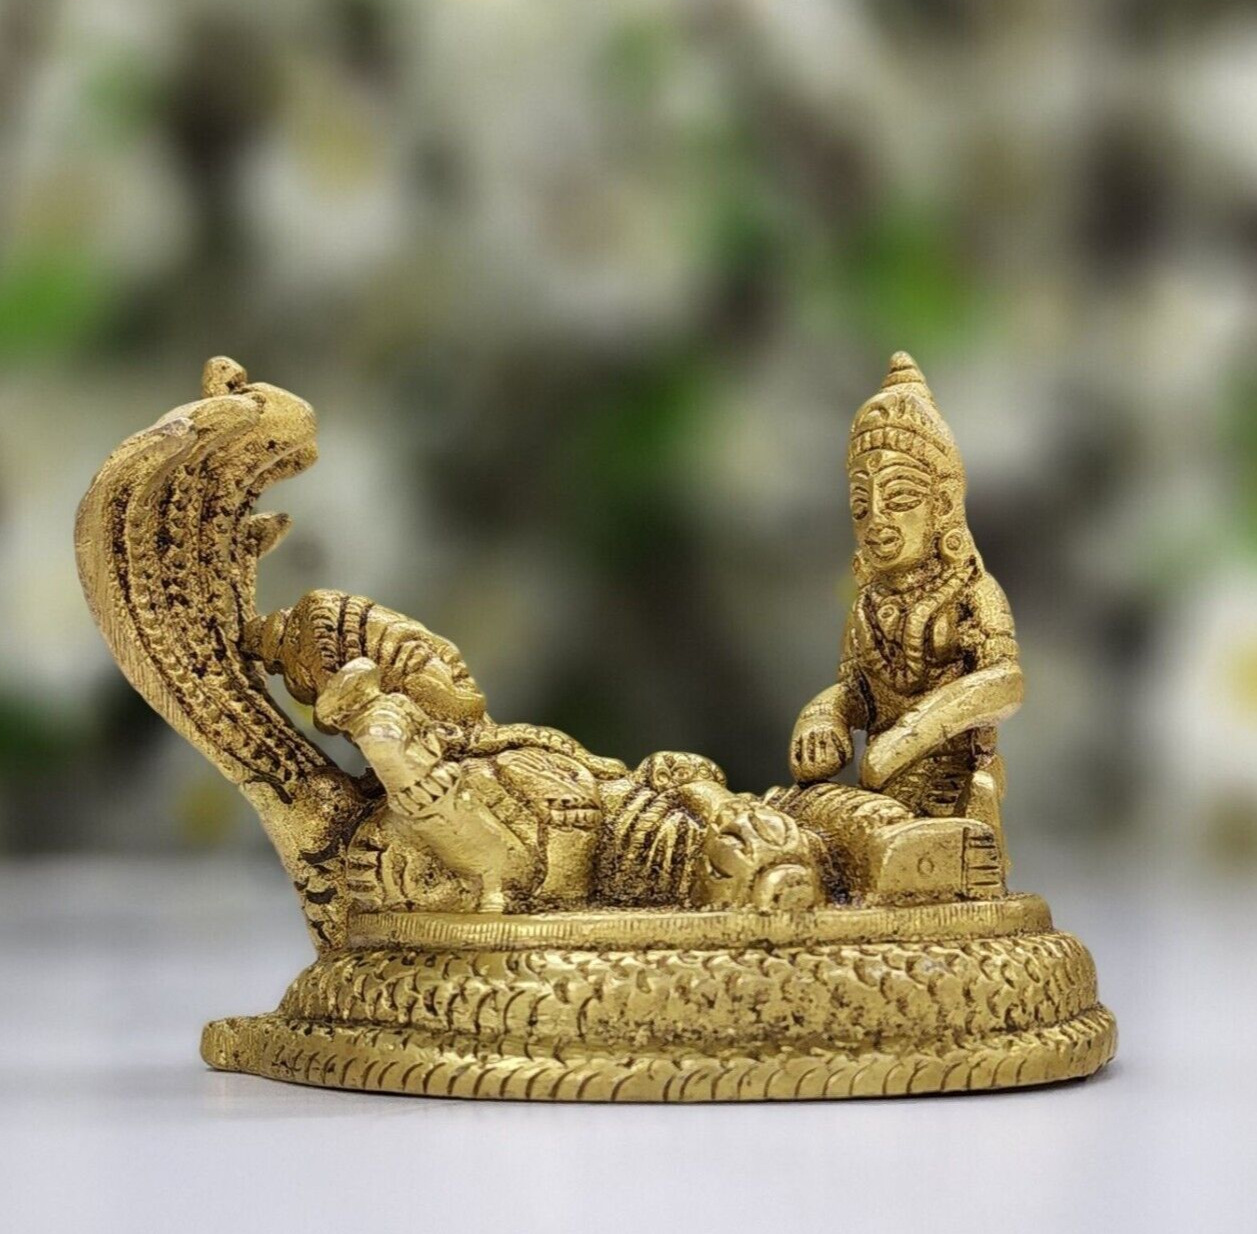 Lord Vishnu Lakshmi Statue Brass Laxmi Narayan Figurine Hindu God Goddess Idols